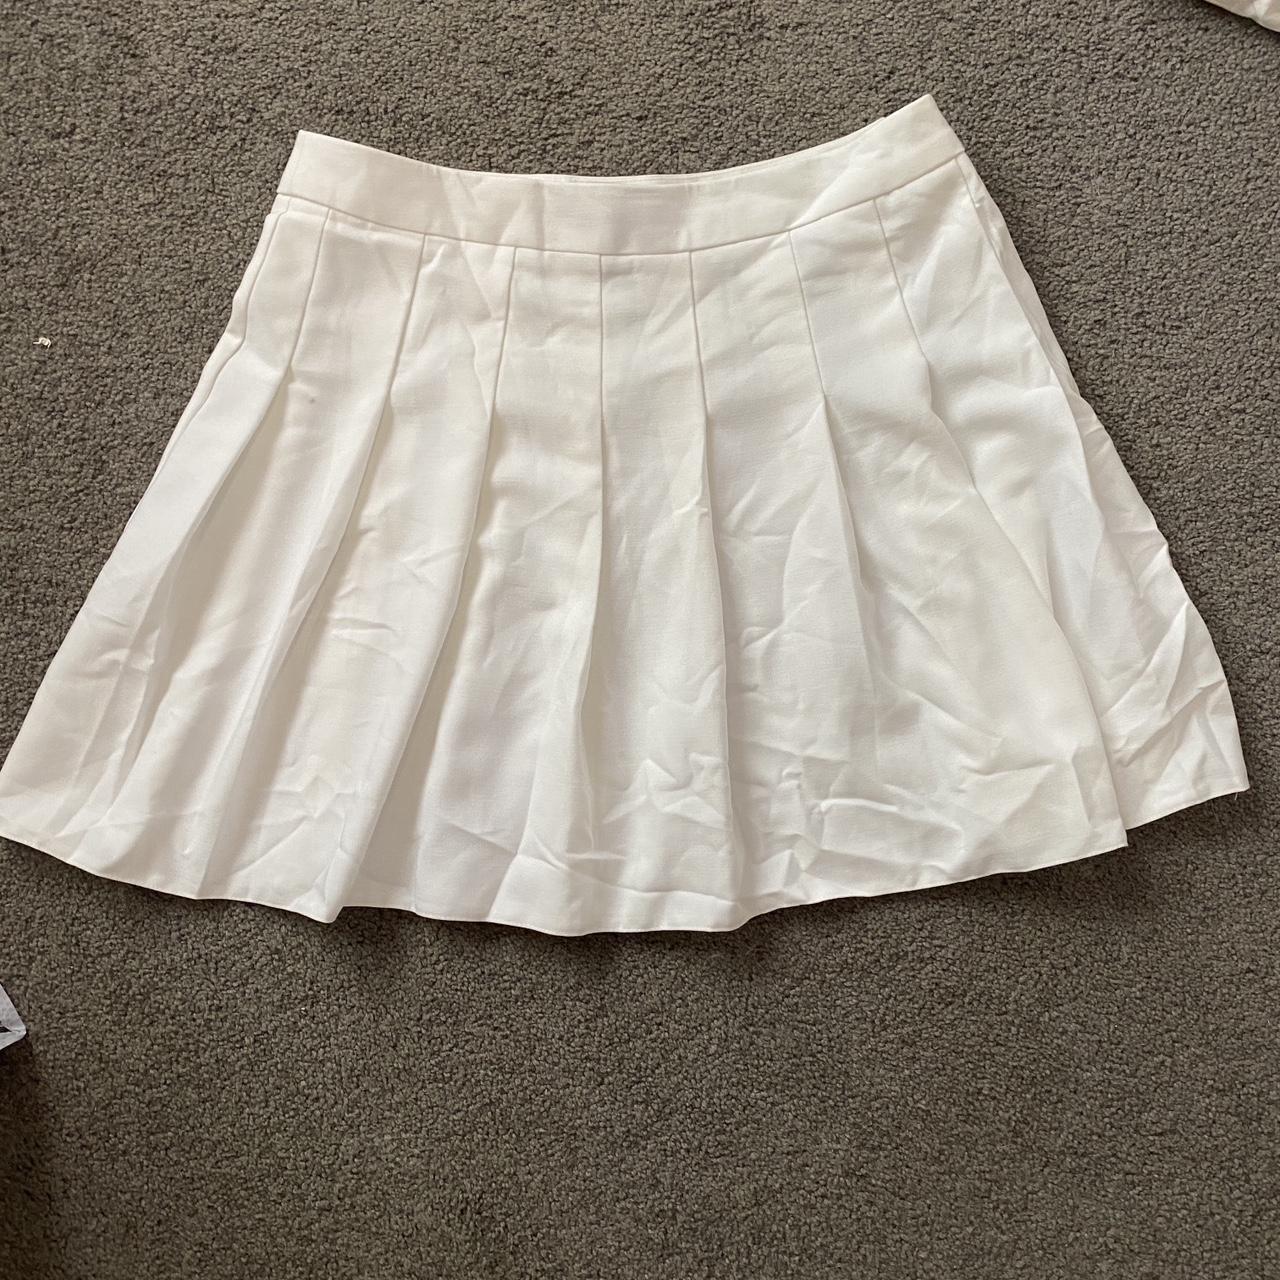 Tennis skirt never worn Brand - New look Size 14 but... - Depop